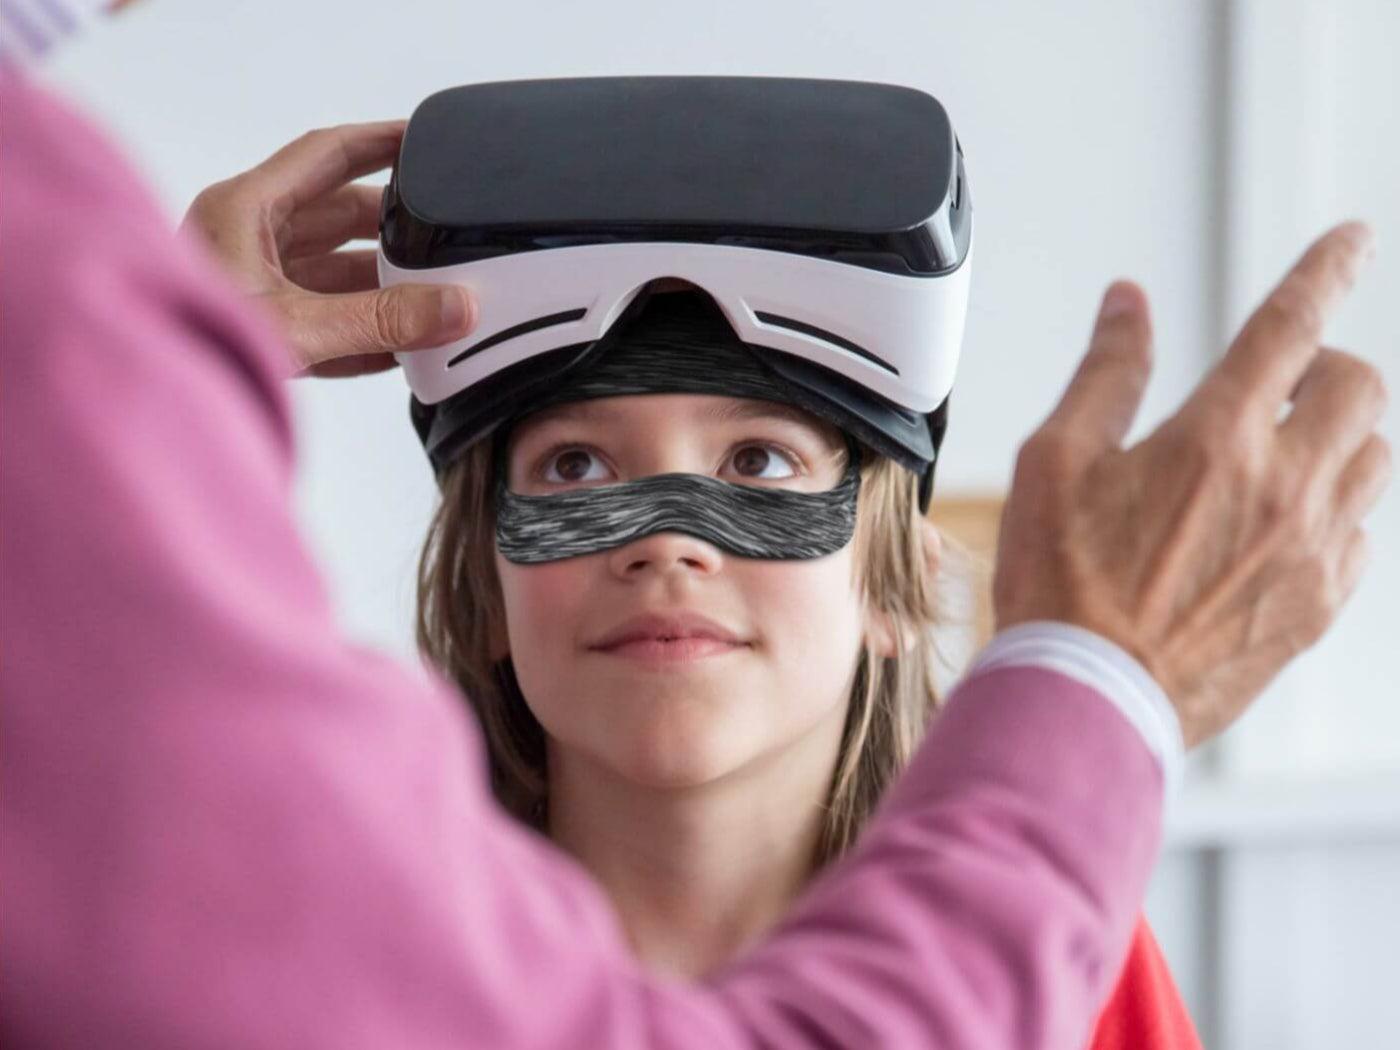 La Nueva Correa De Cabeza Ajustable Para Meta quest 3 VR Gafas De Realidad  Virtual Accesorios